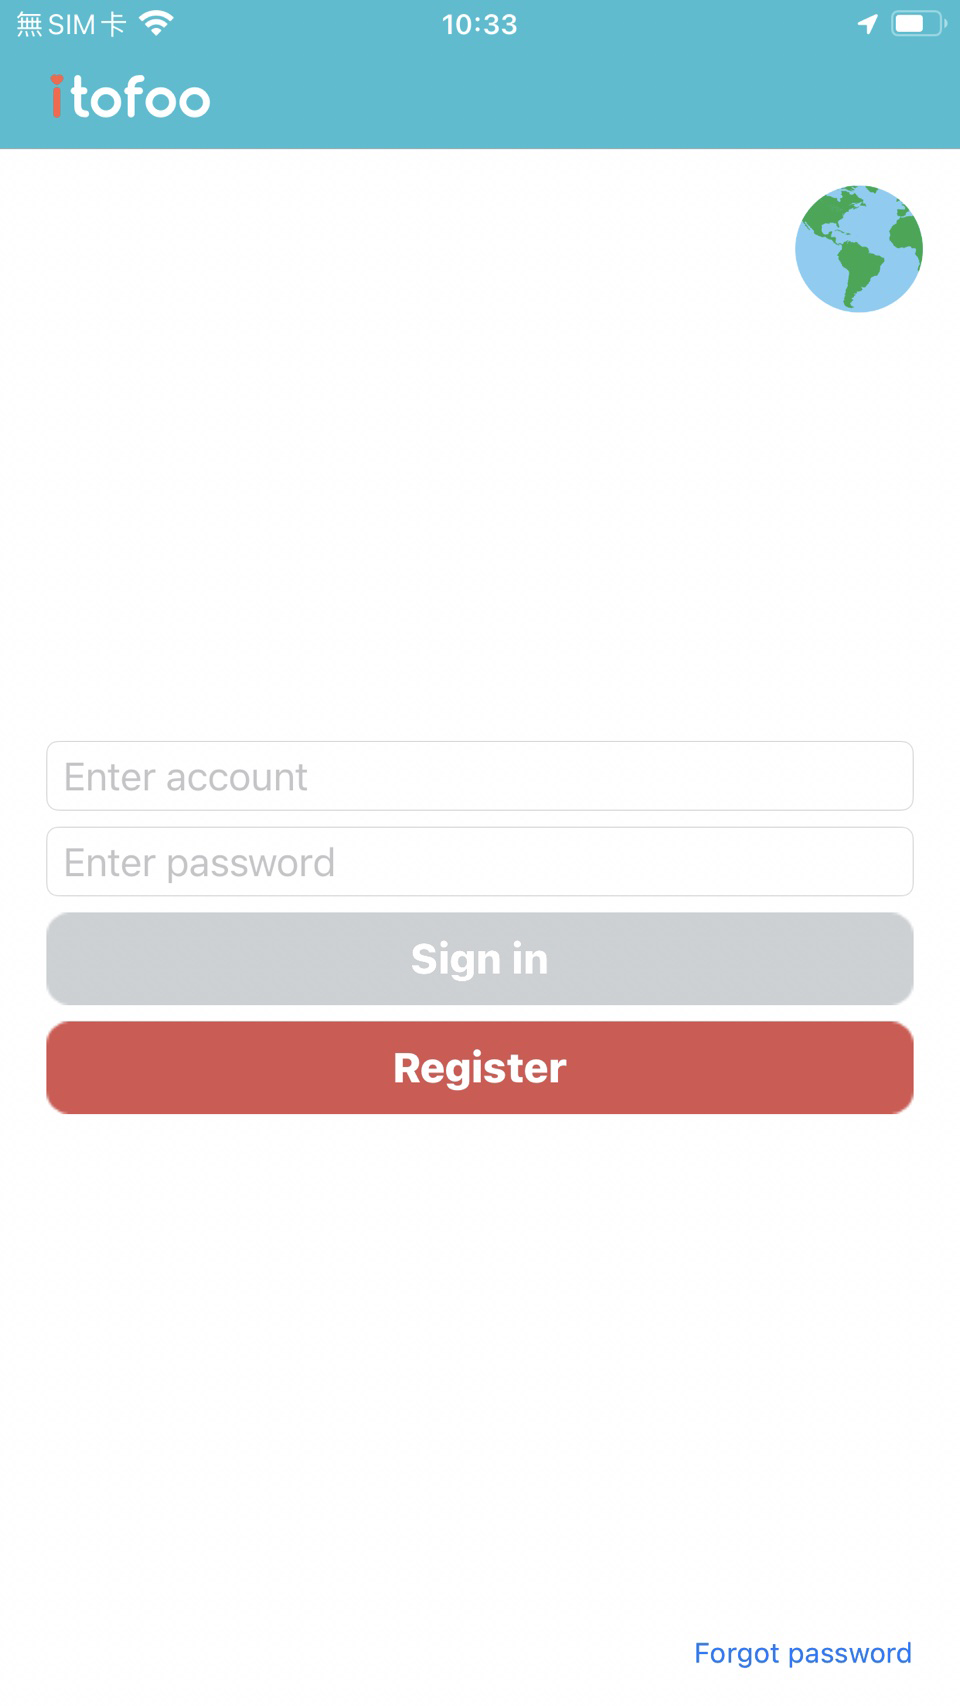 Register an account